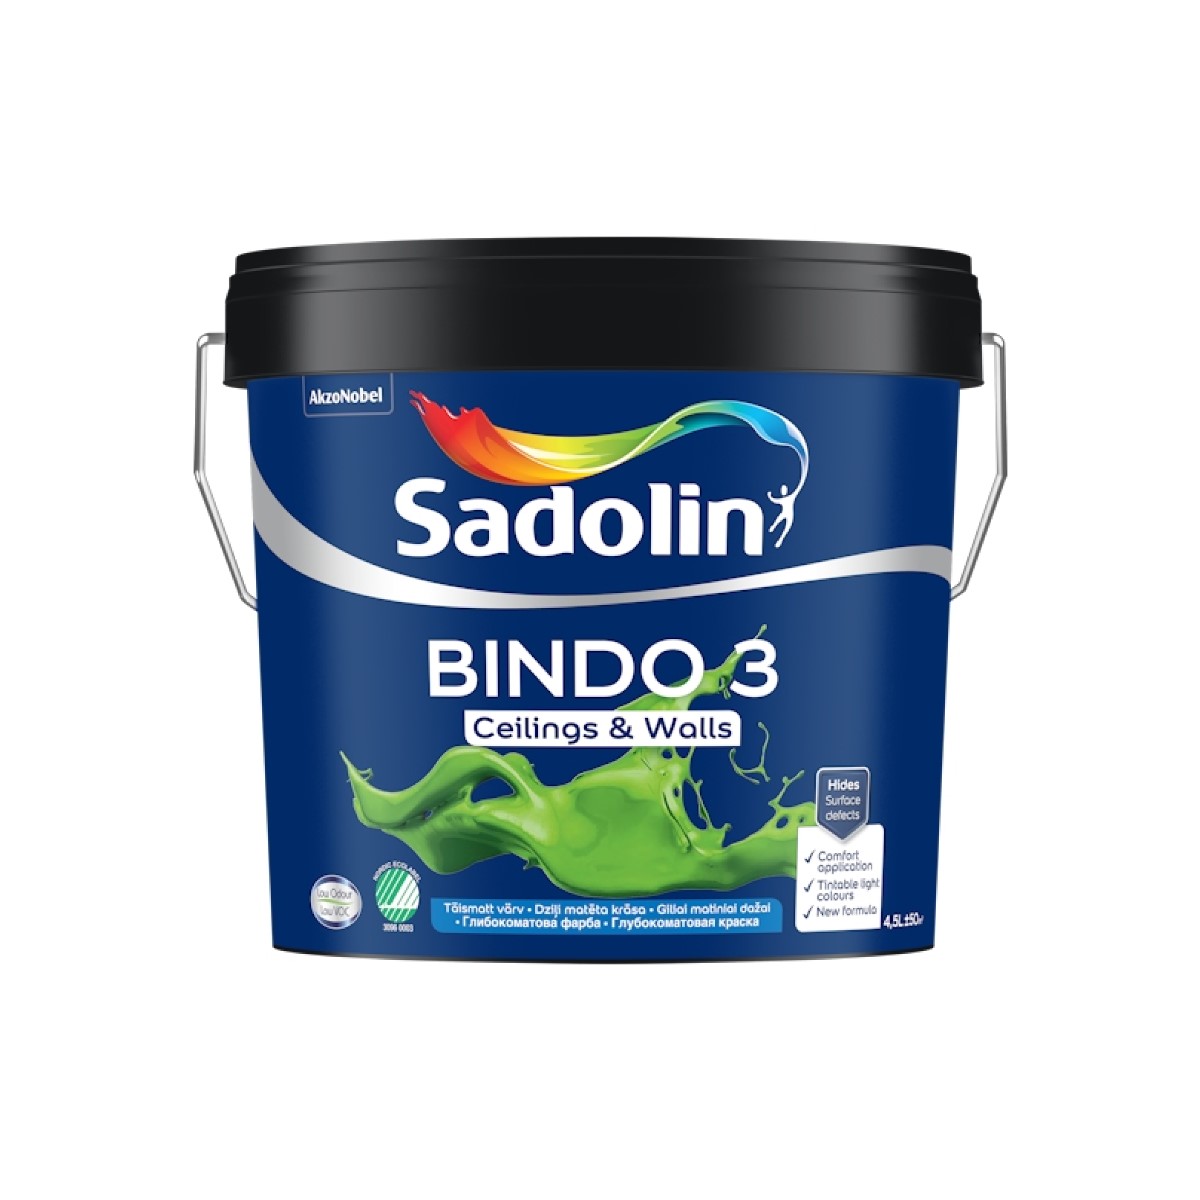 Sadolin Bindo 3 Dziļi matēta krāsa sienām un griestiem BW 4.5L